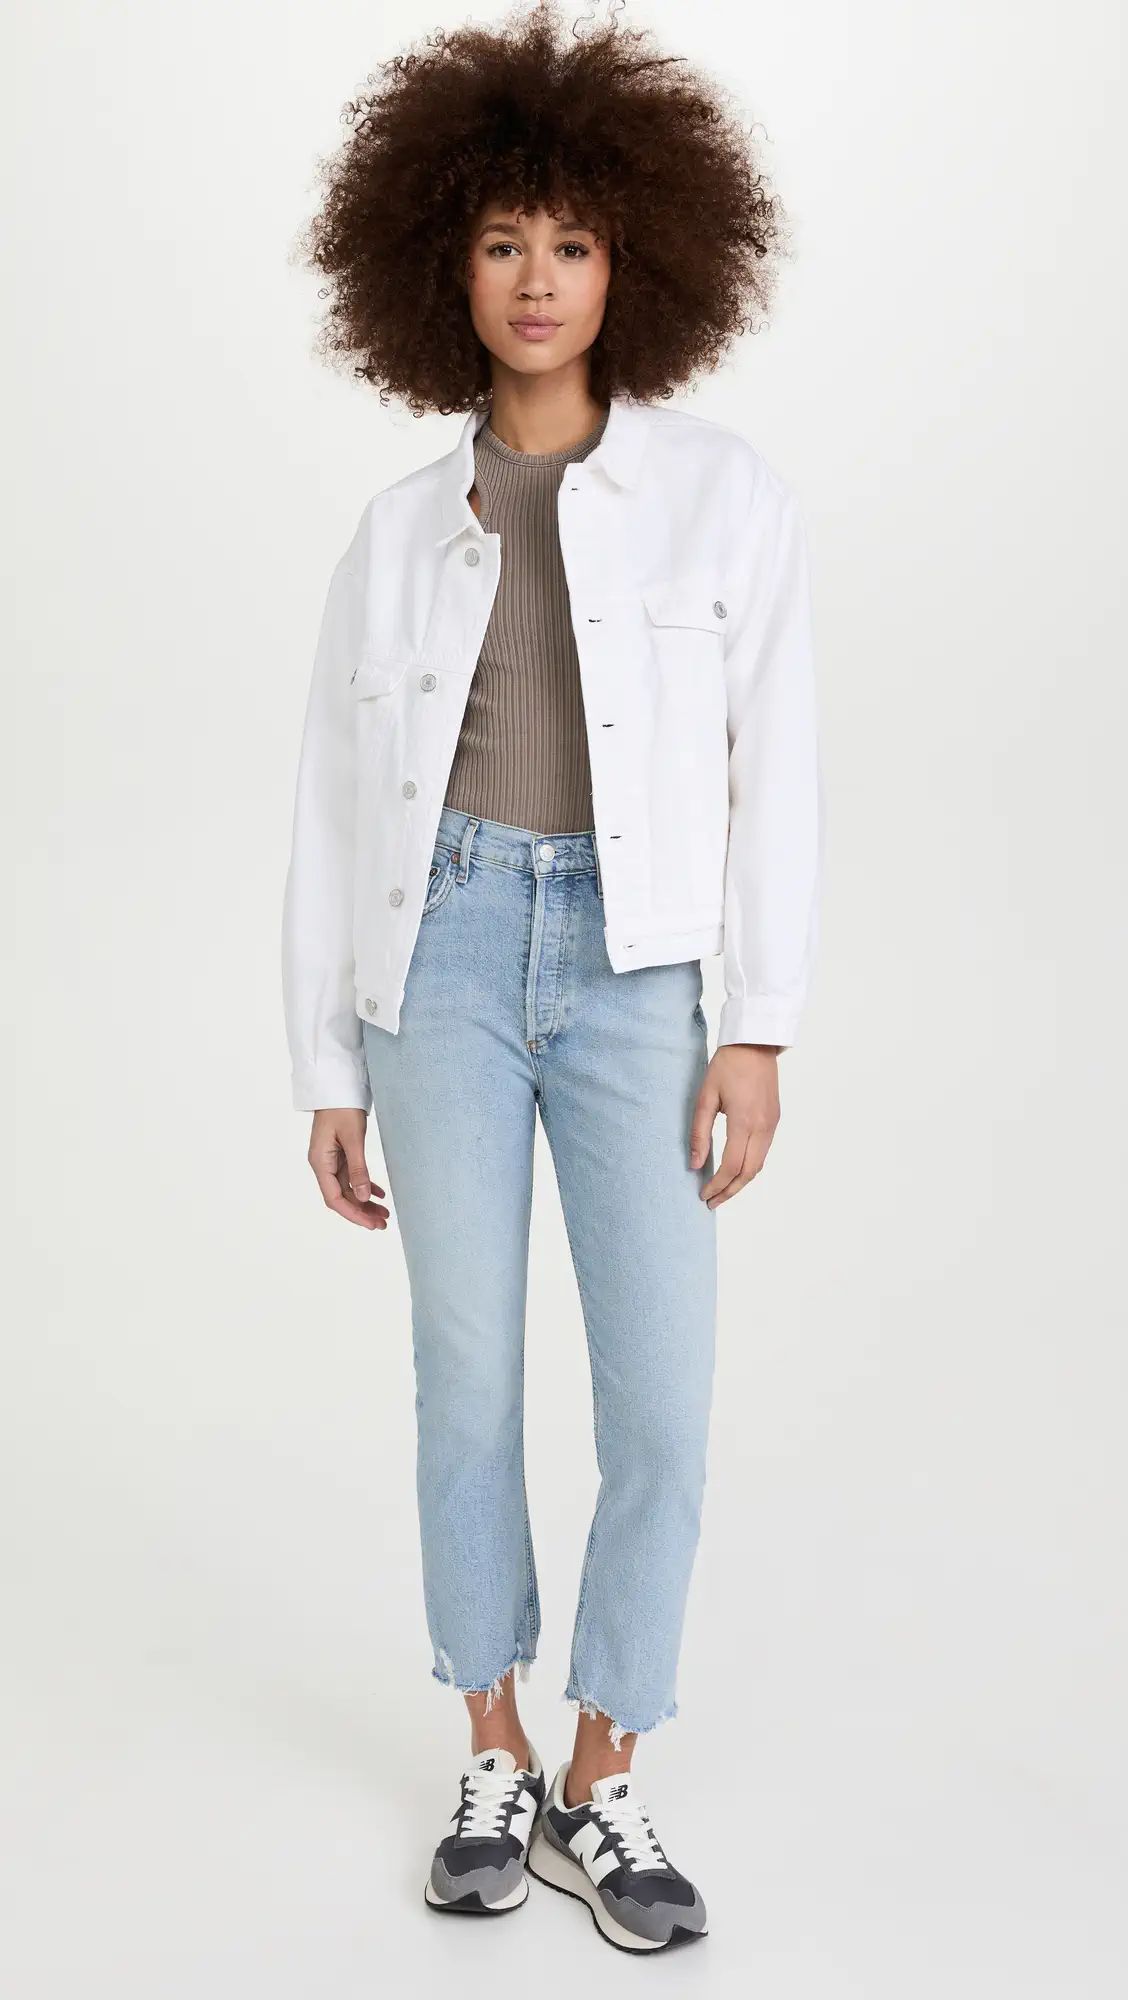 Riley Crop Jeans | Shopbop